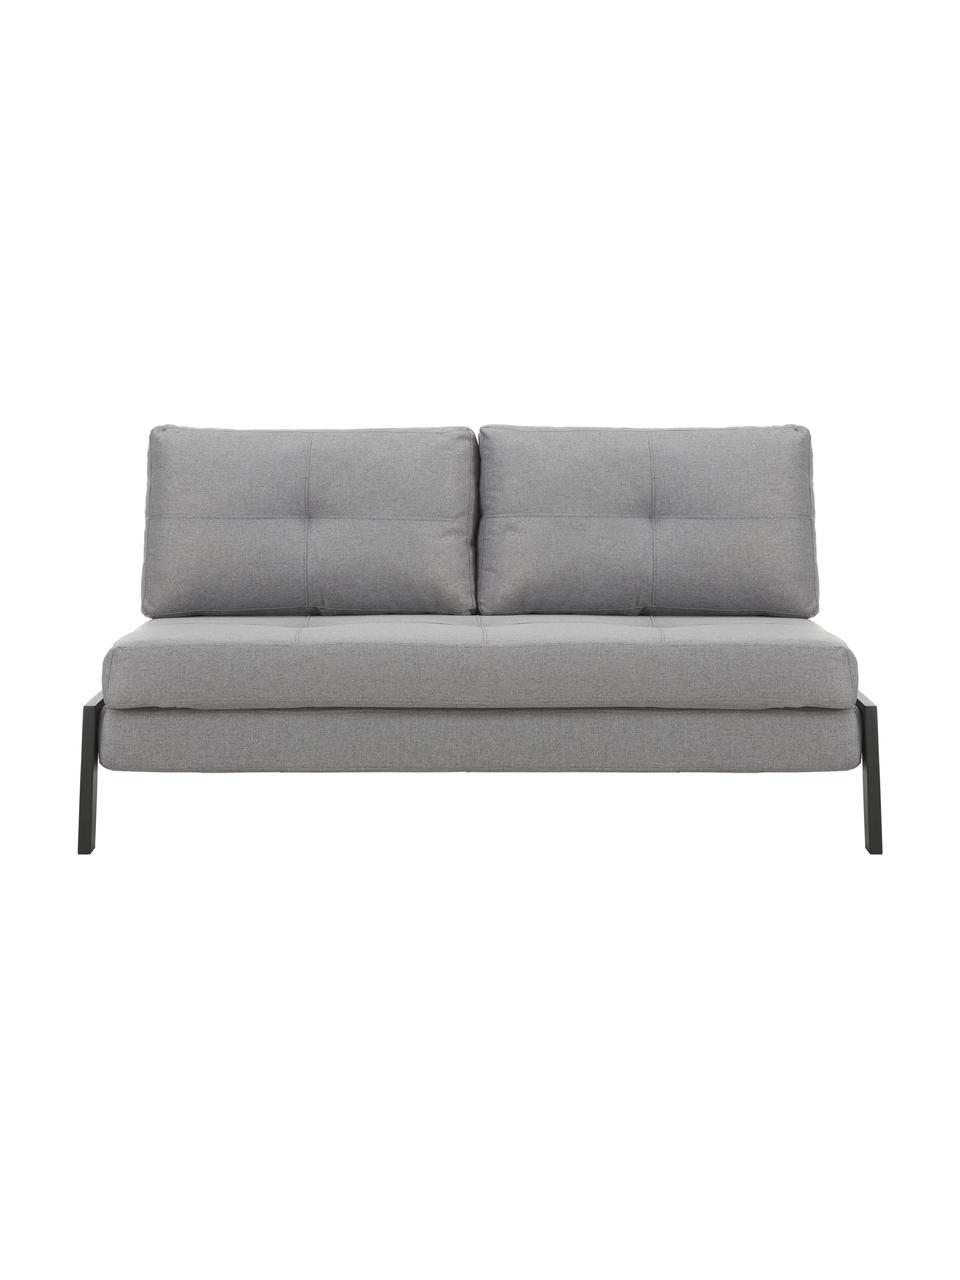 Sofa rozkładana z metalowymi nogami Edward, Tapicerka: 100% poliester 40 000 cyk, Jasny szary, S 152 x G 96 cm